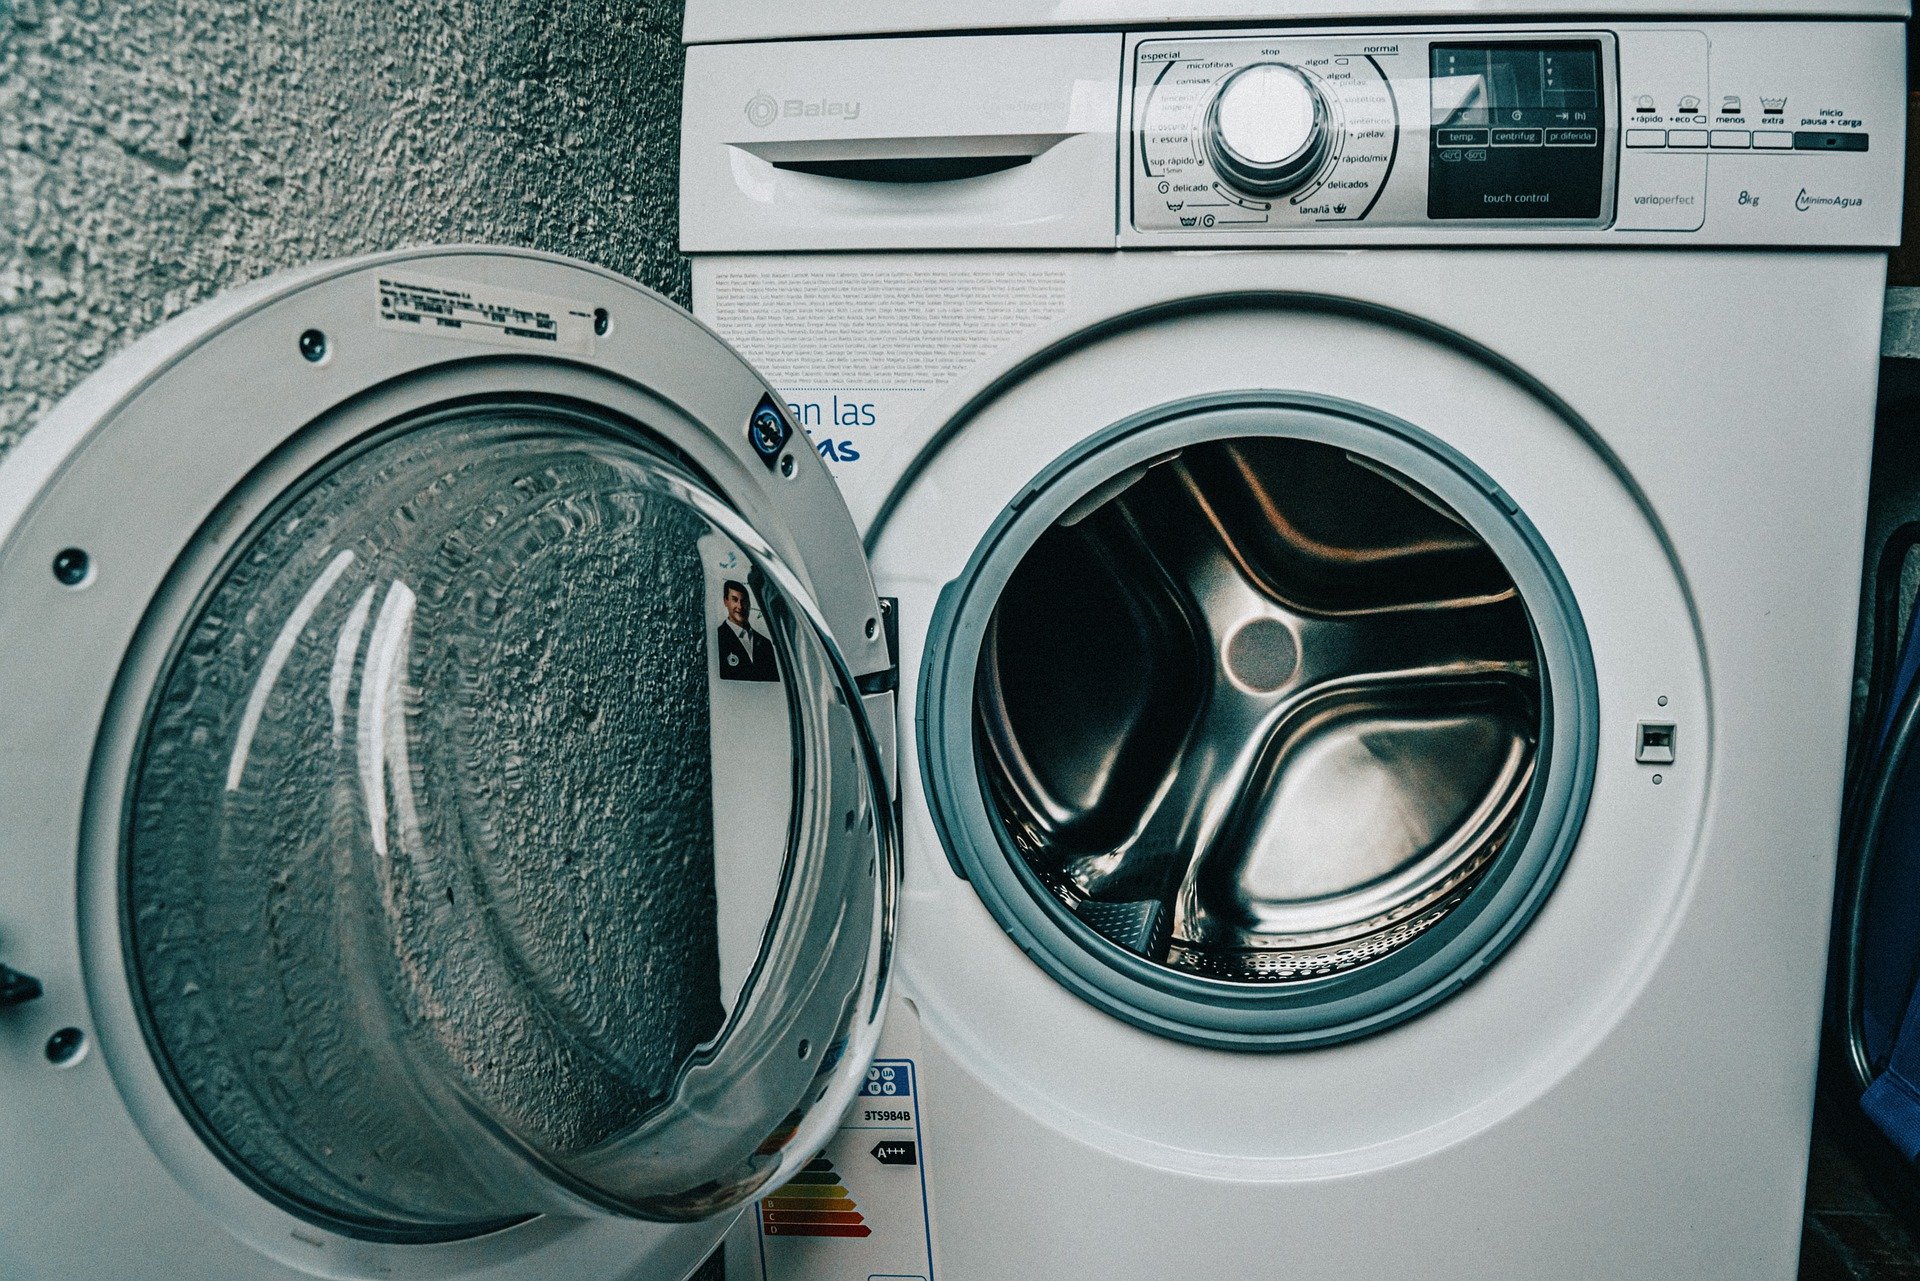 Poner la lavadora por la noche puede acabar con una demanda del vecino